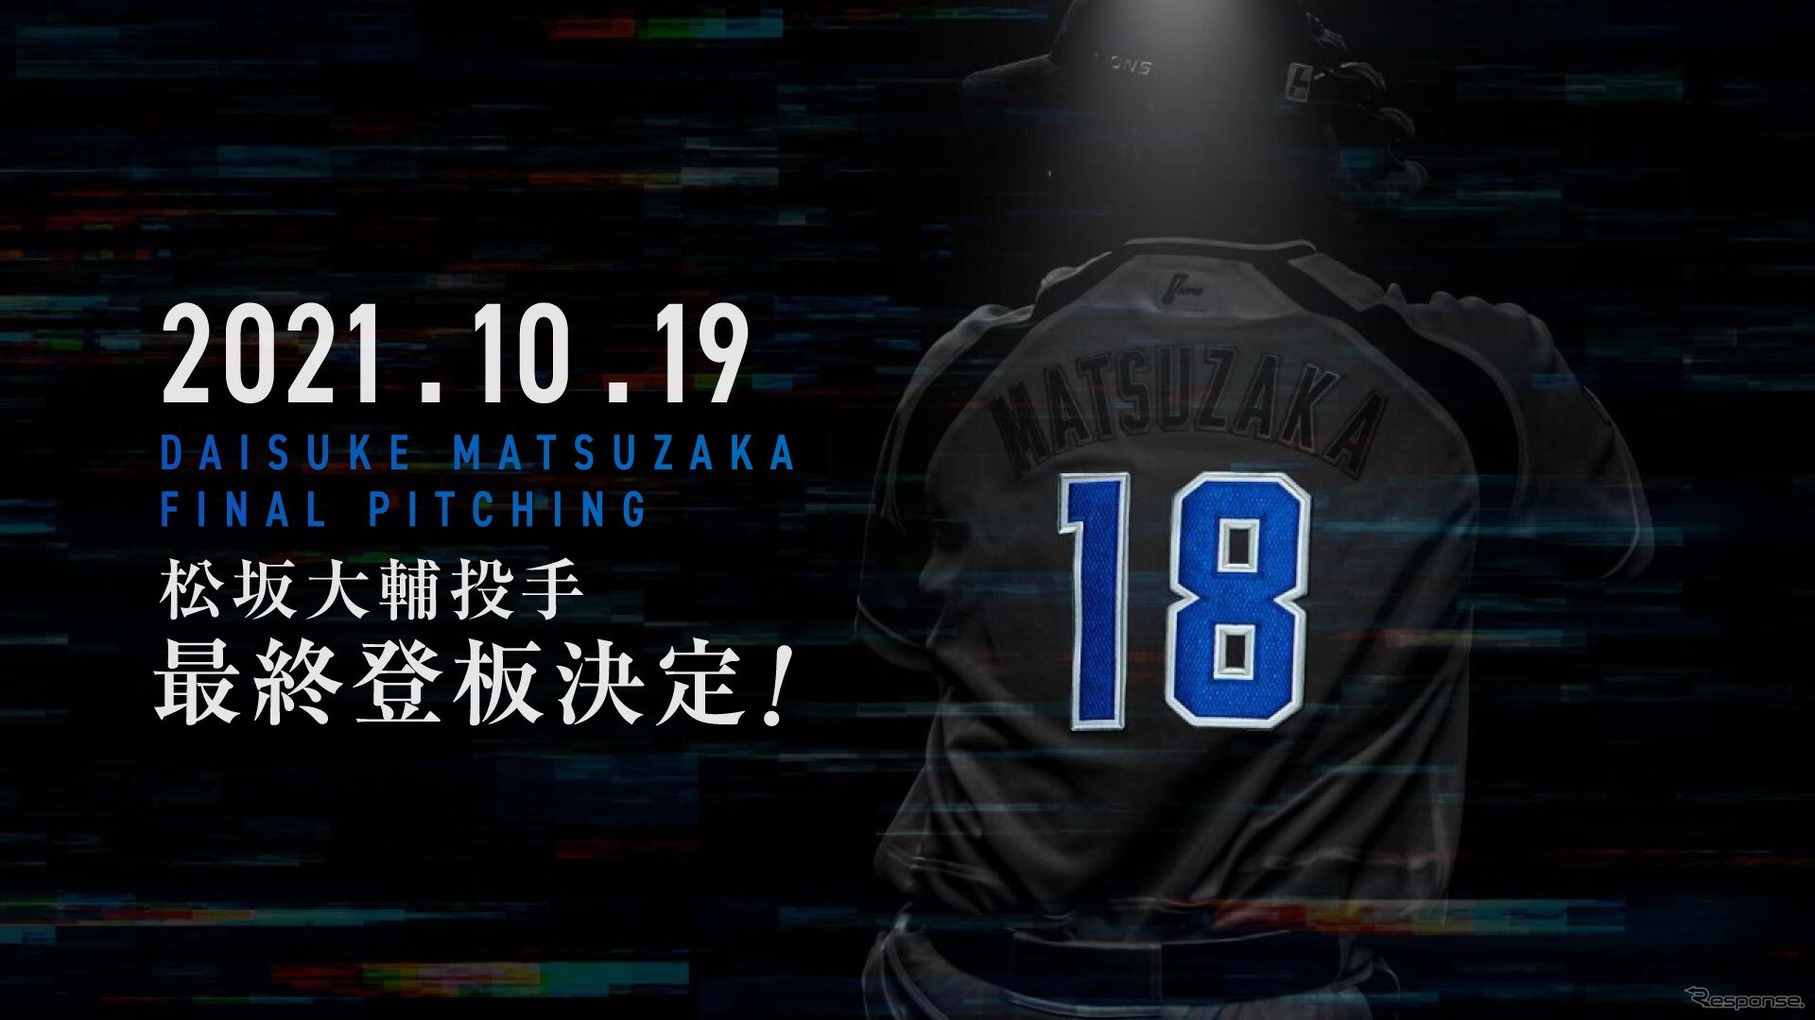 松坂大輔投手の最終登板をPRする埼玉西武ライオンズのウェブサイト。